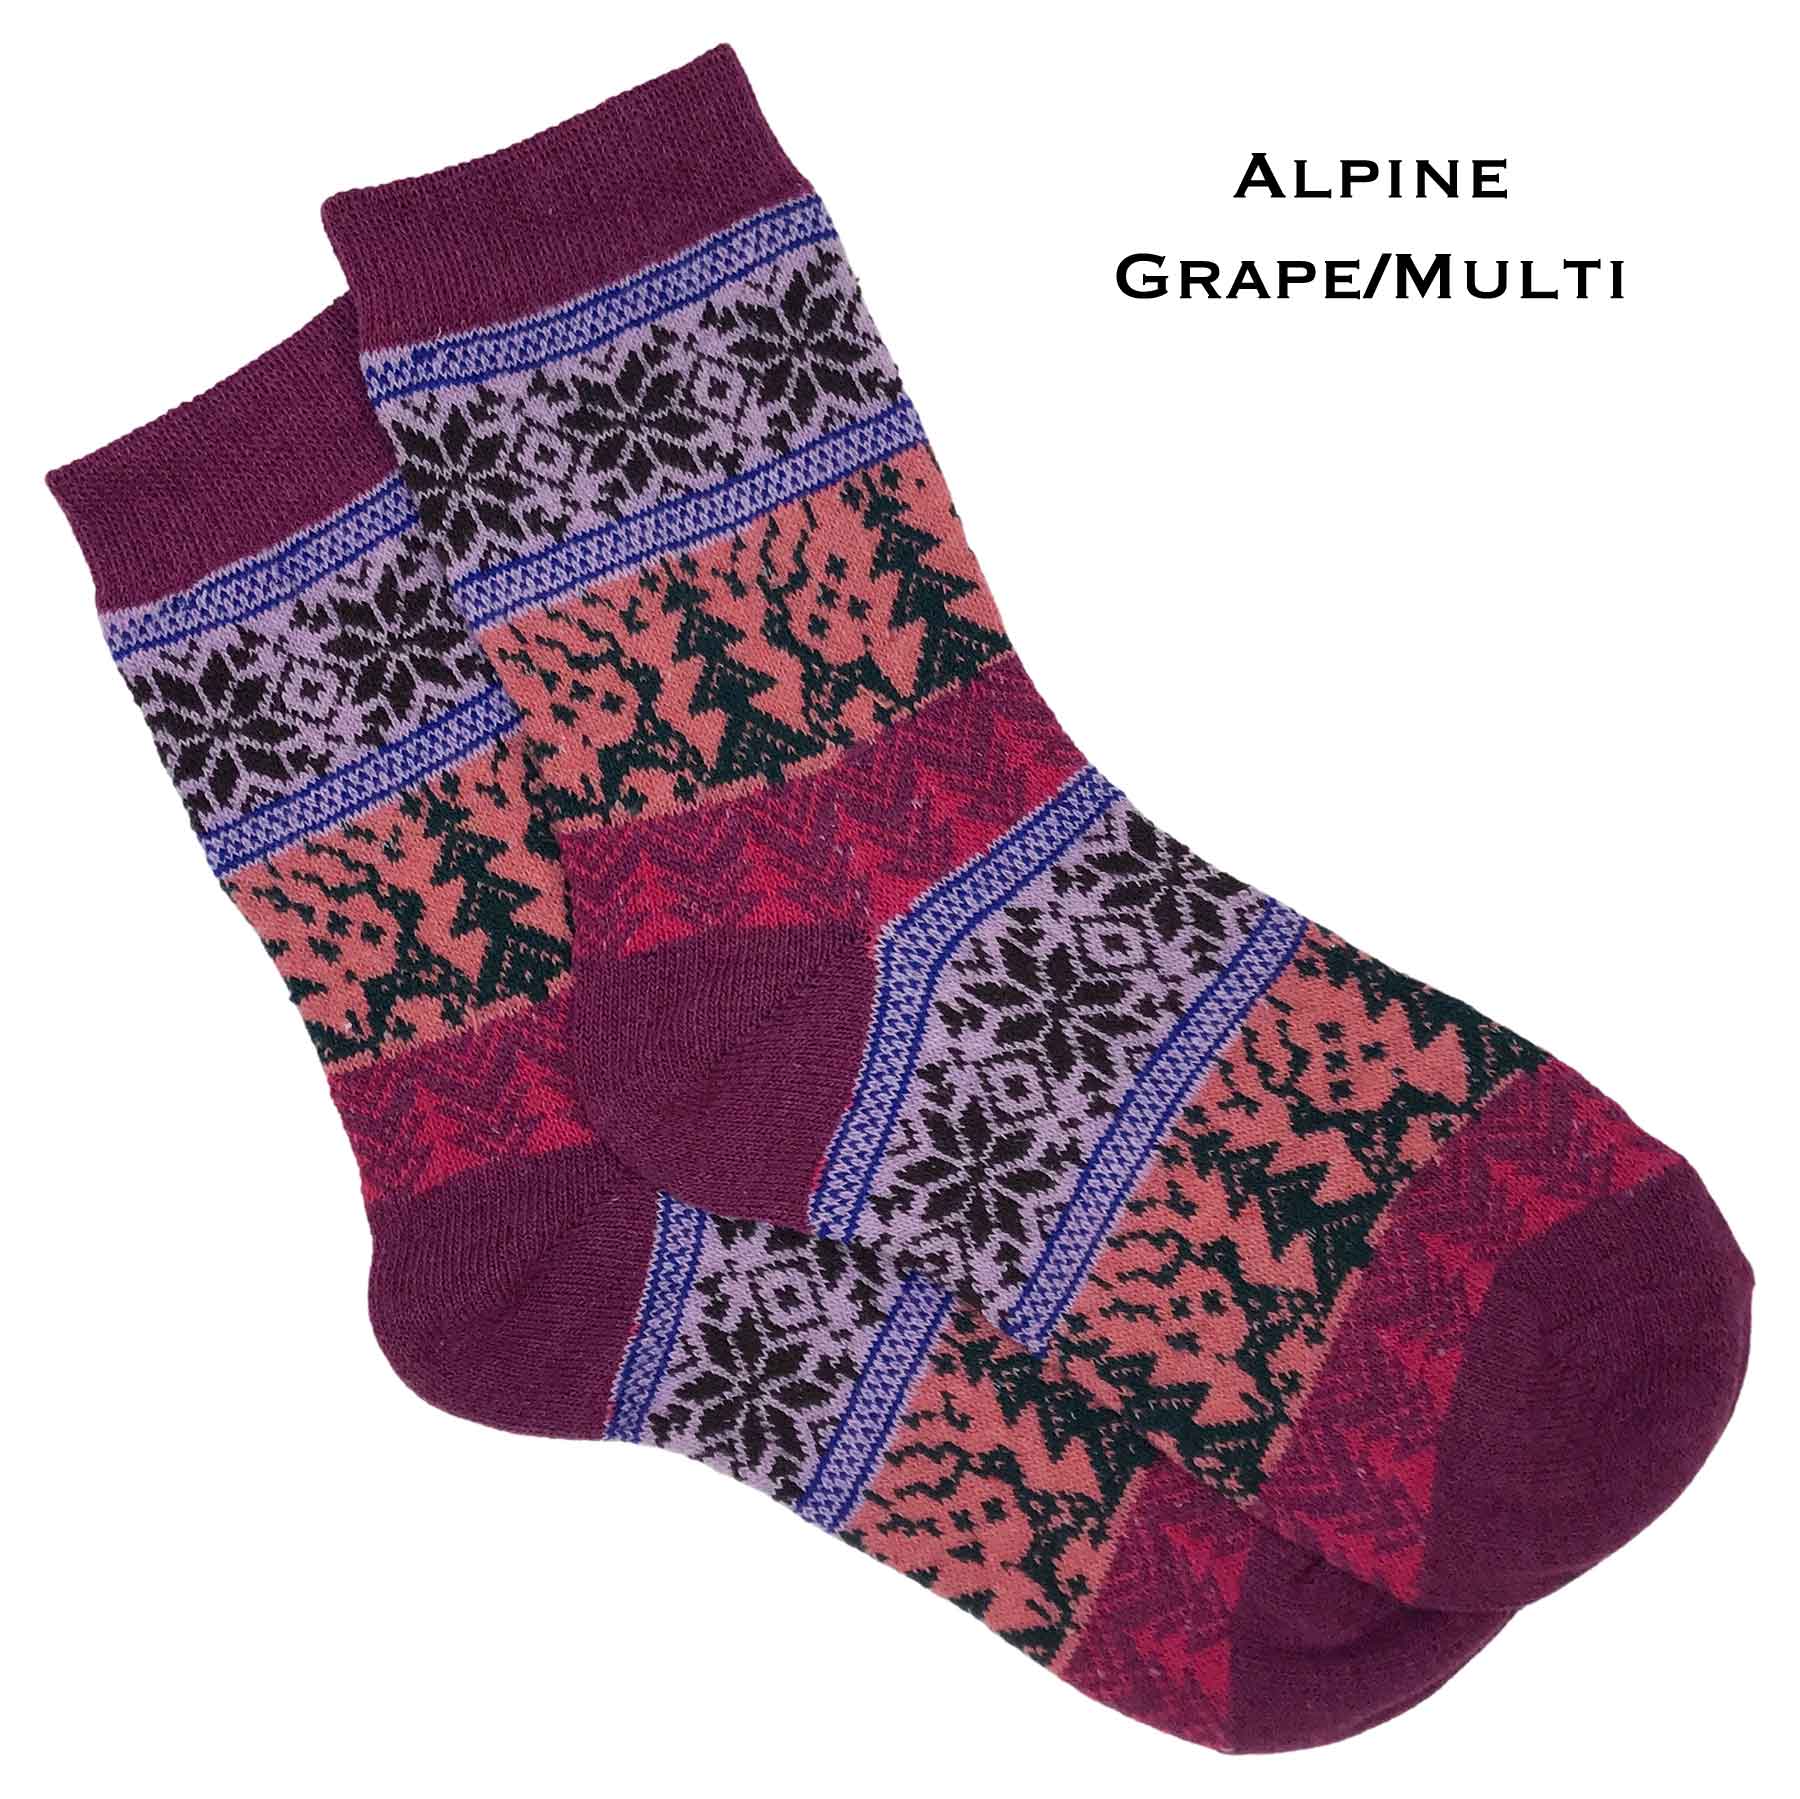 Alpine - Grape/Multi